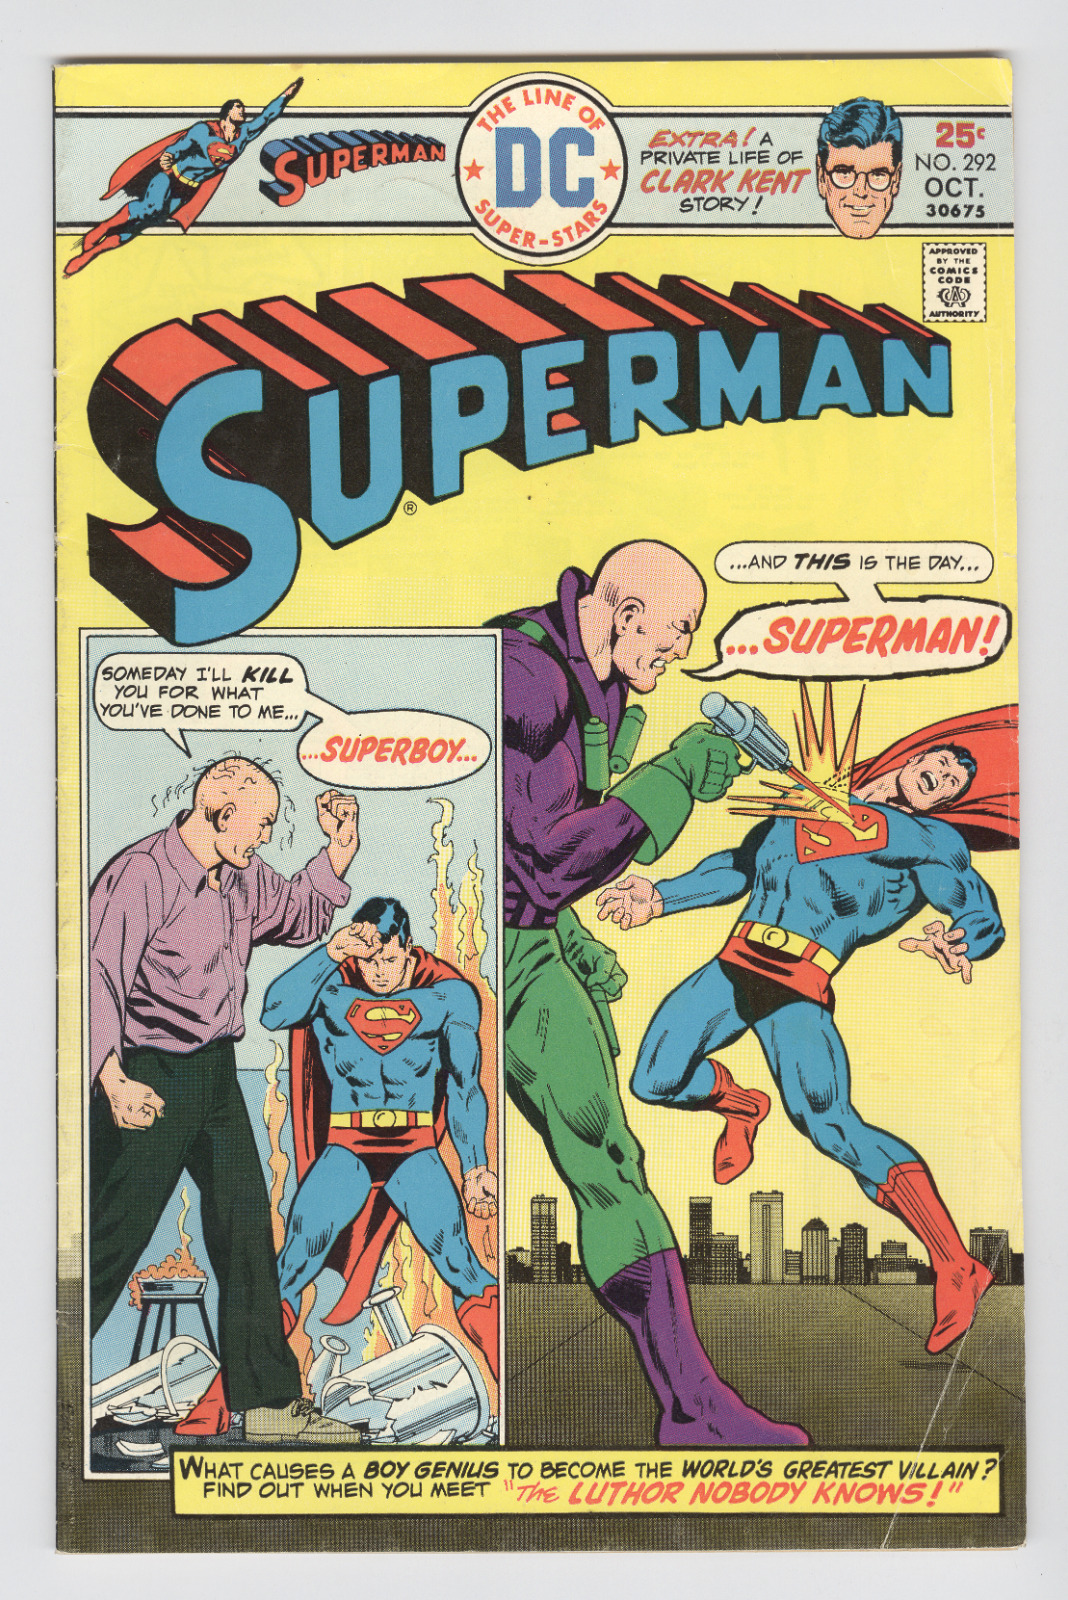 Superman #292 October 1975 VG Luthor